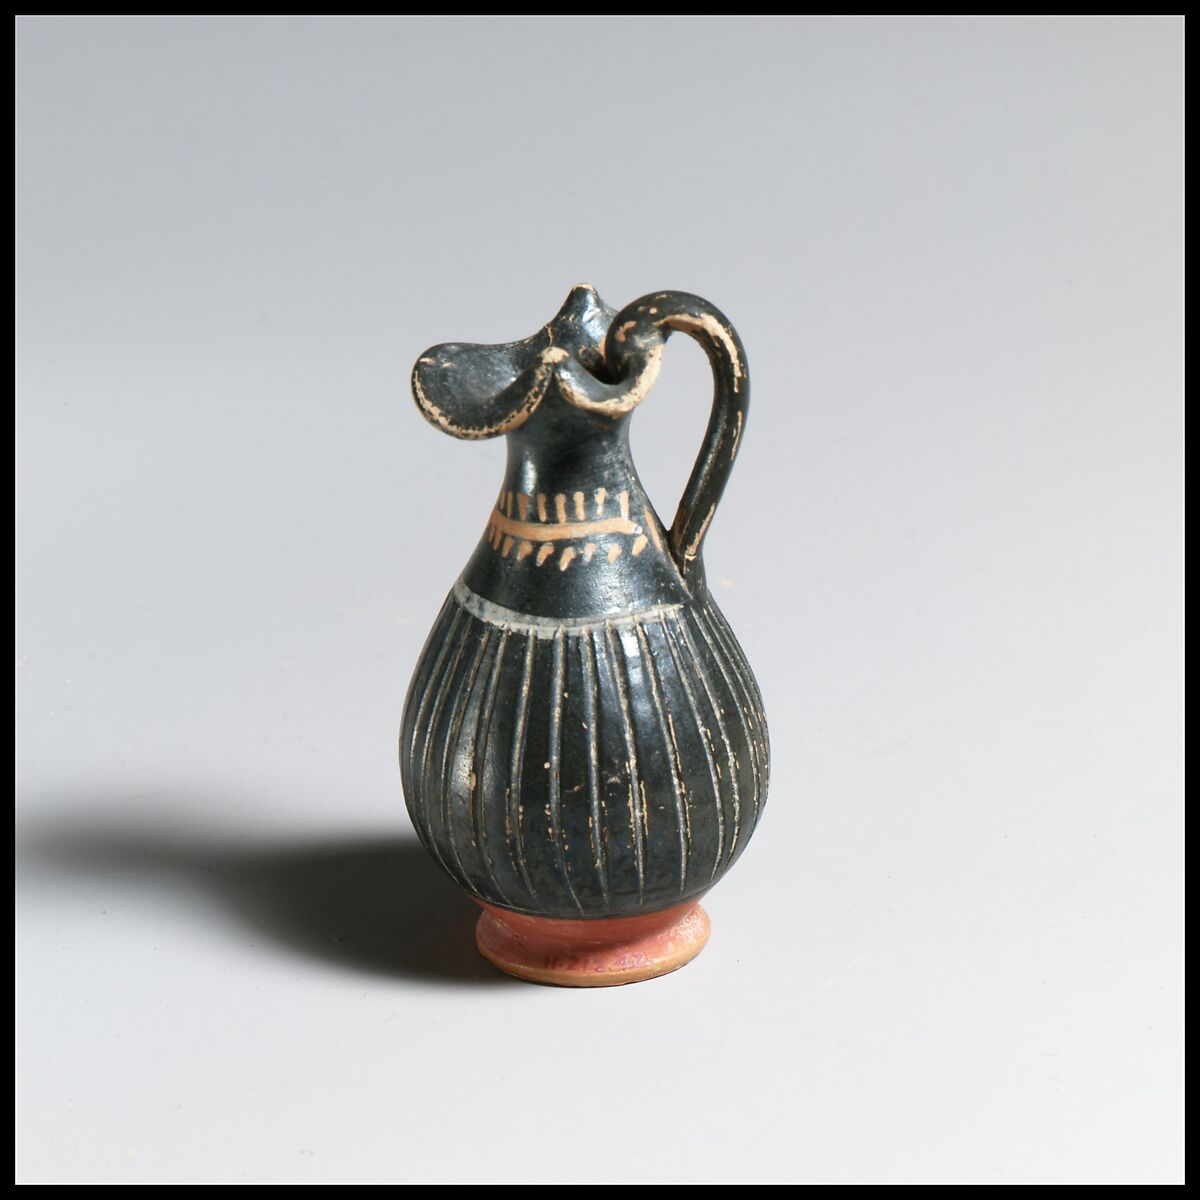 Terracotta miniature oinochoe (jug), Terracotta, Greek, South Italian, Apulian 